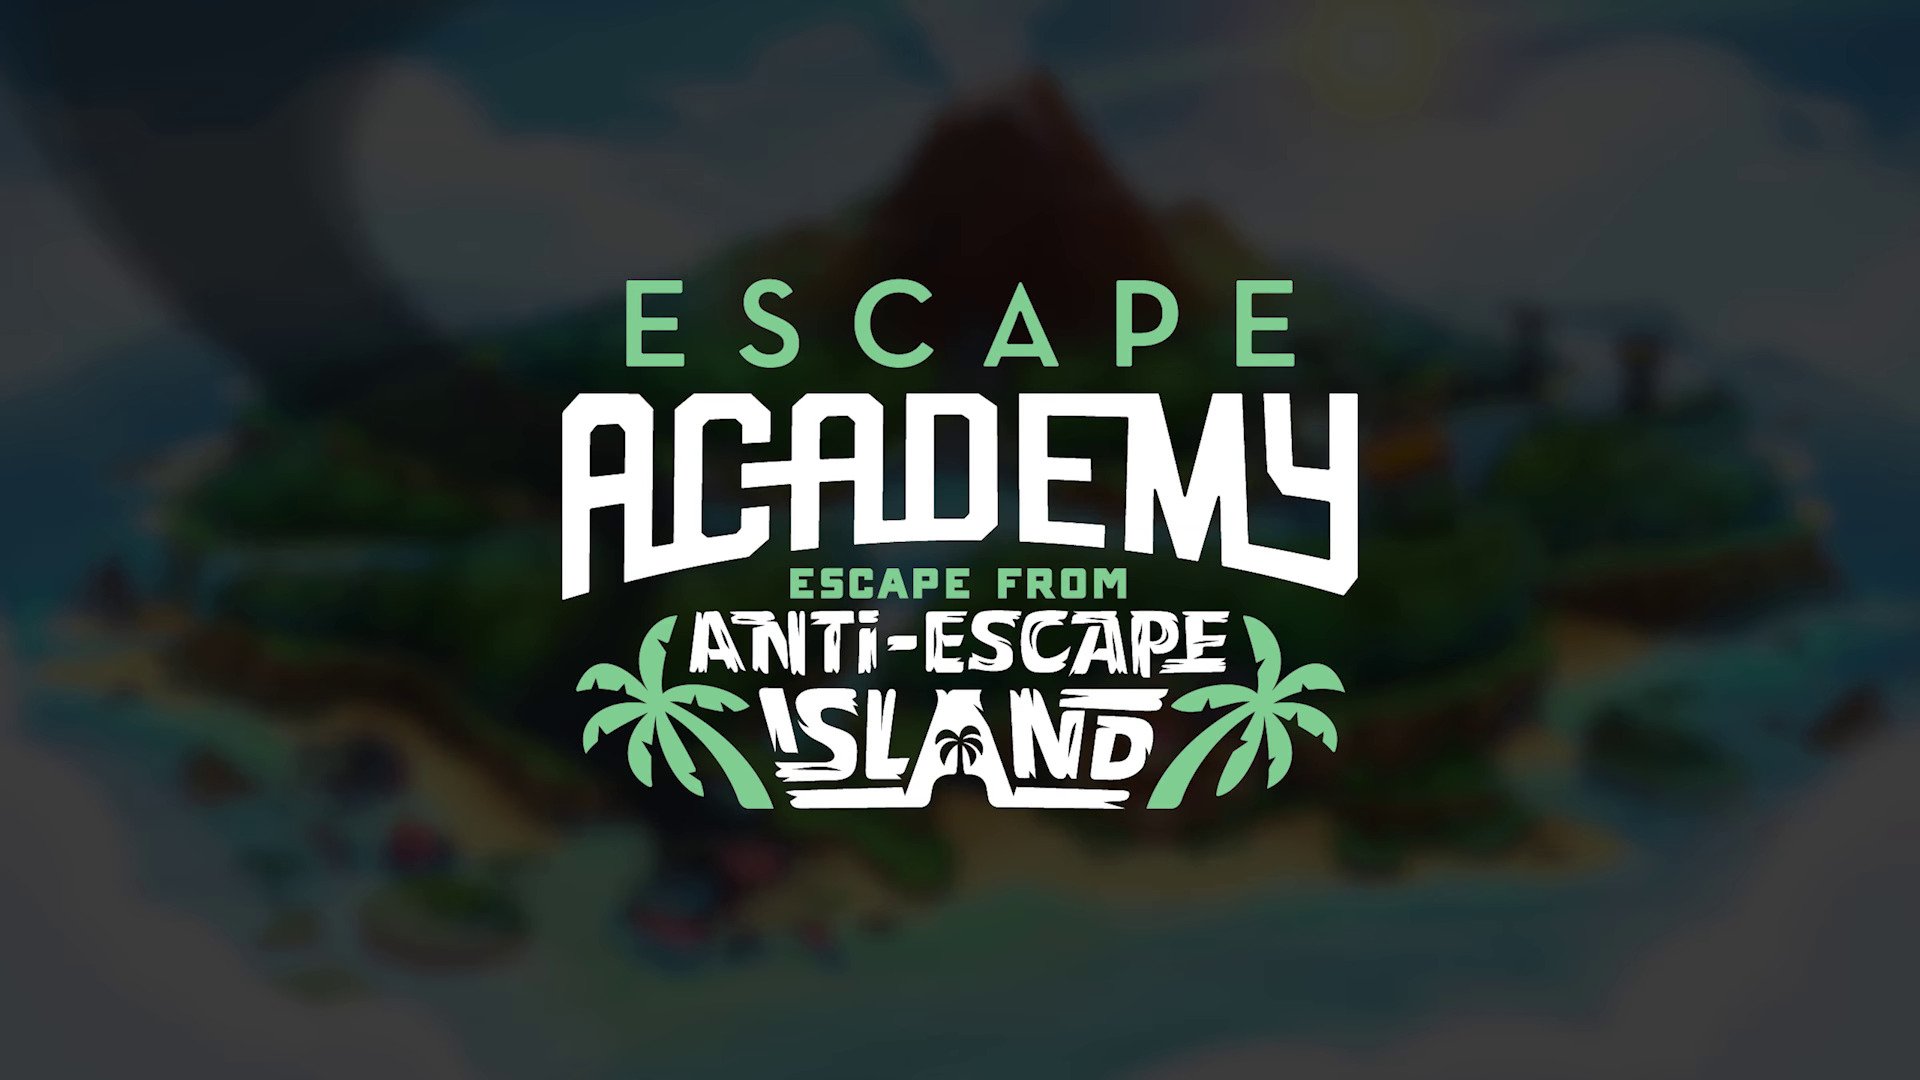 Comprar o Escape Academy